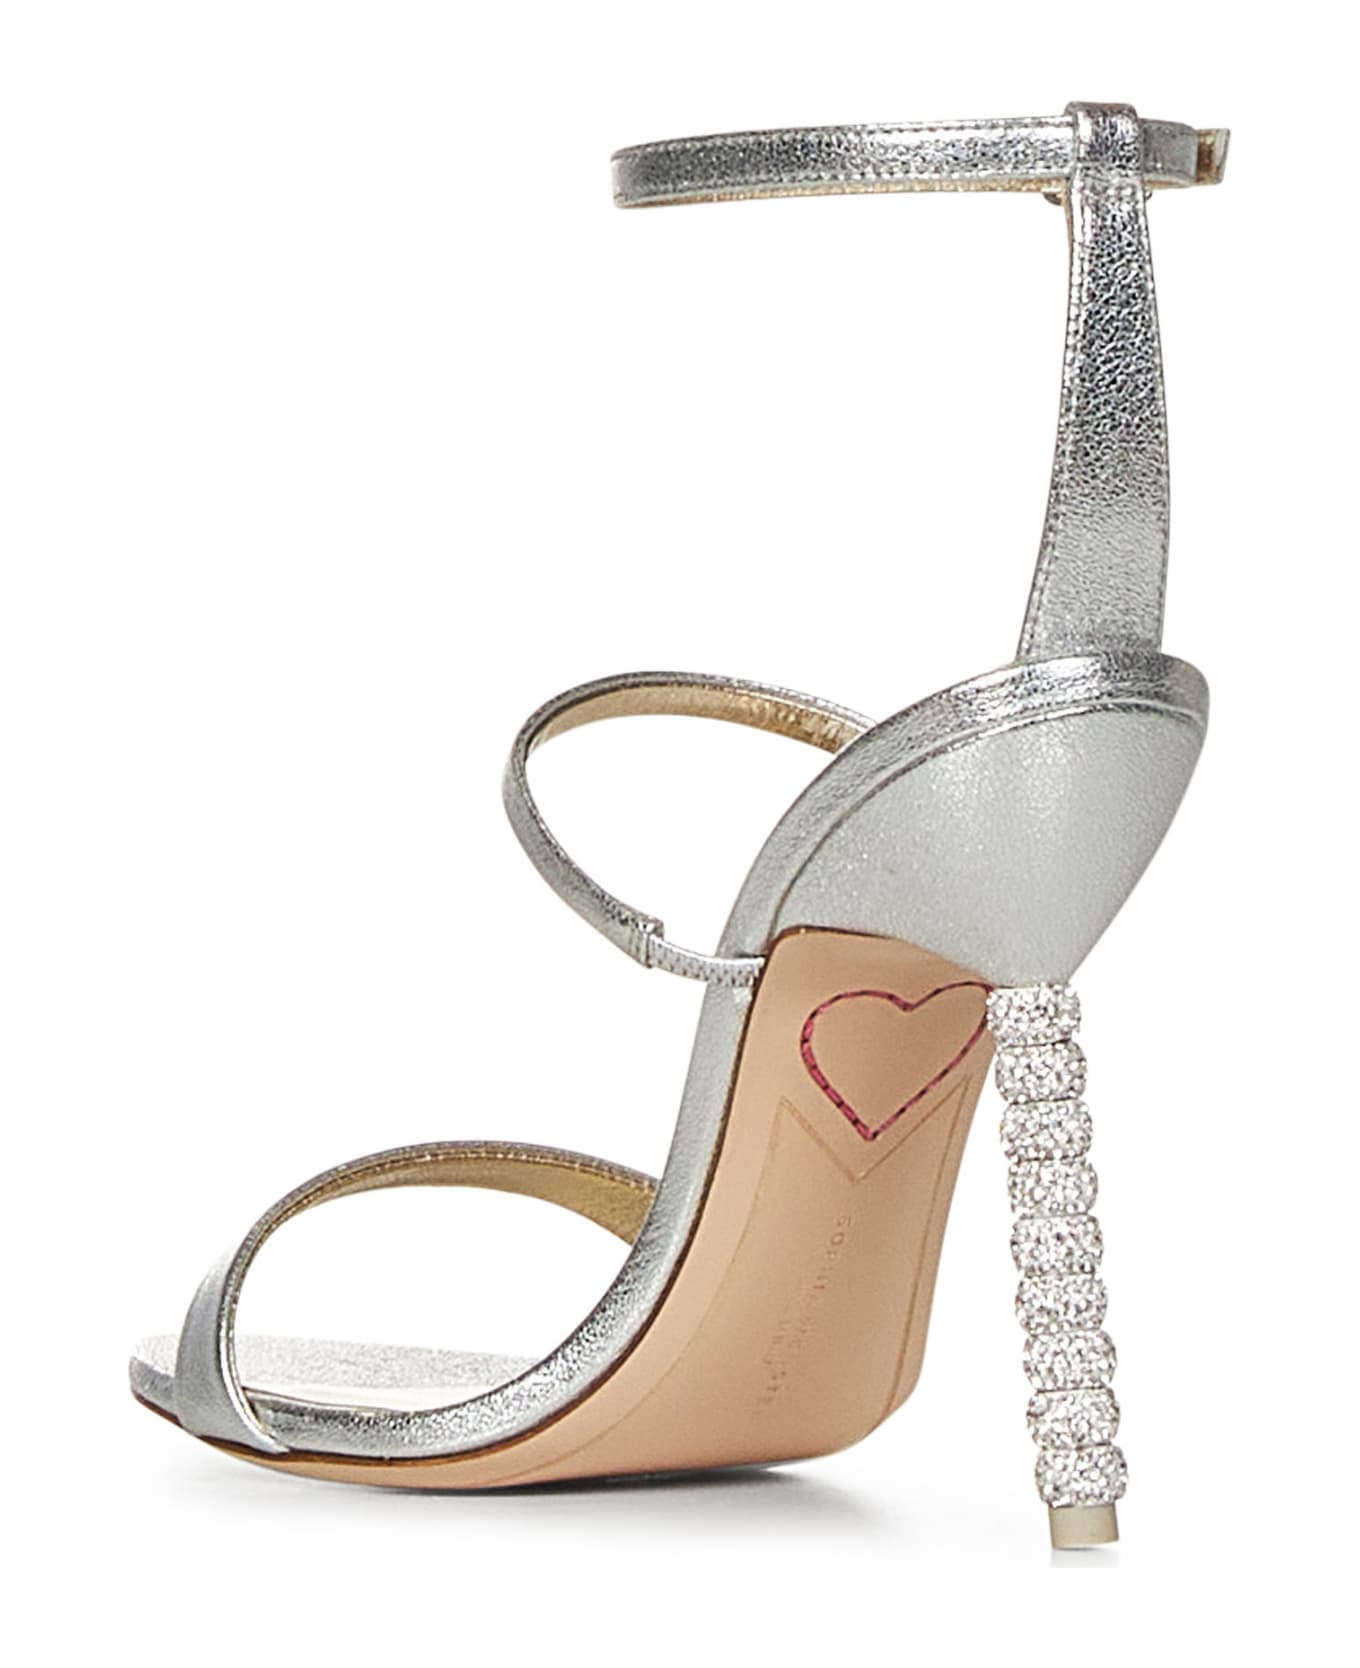 Sophia Webster Rosalind Sandals - Silver